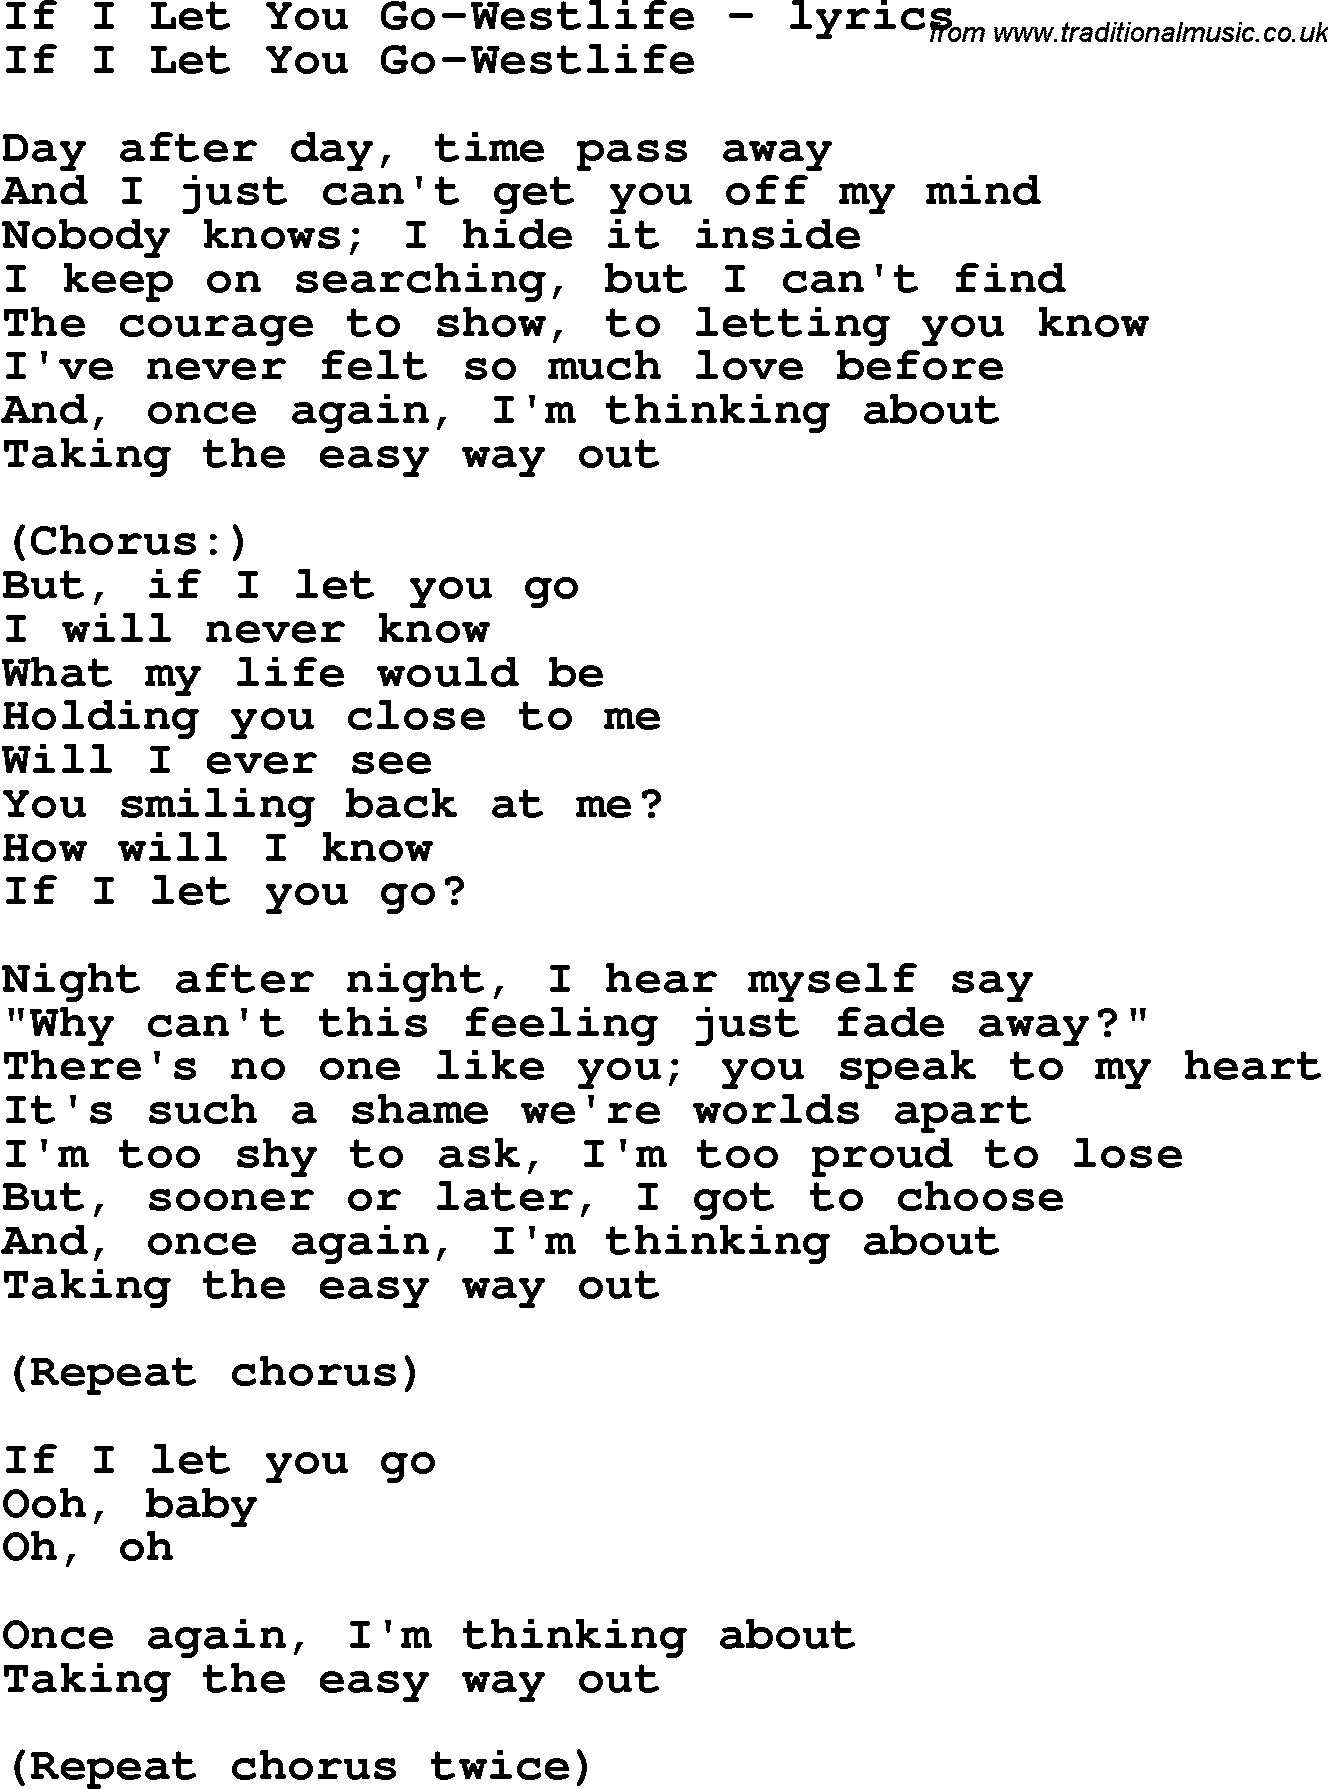 Love Song Lyrics for: If I Let You Go-Westlife